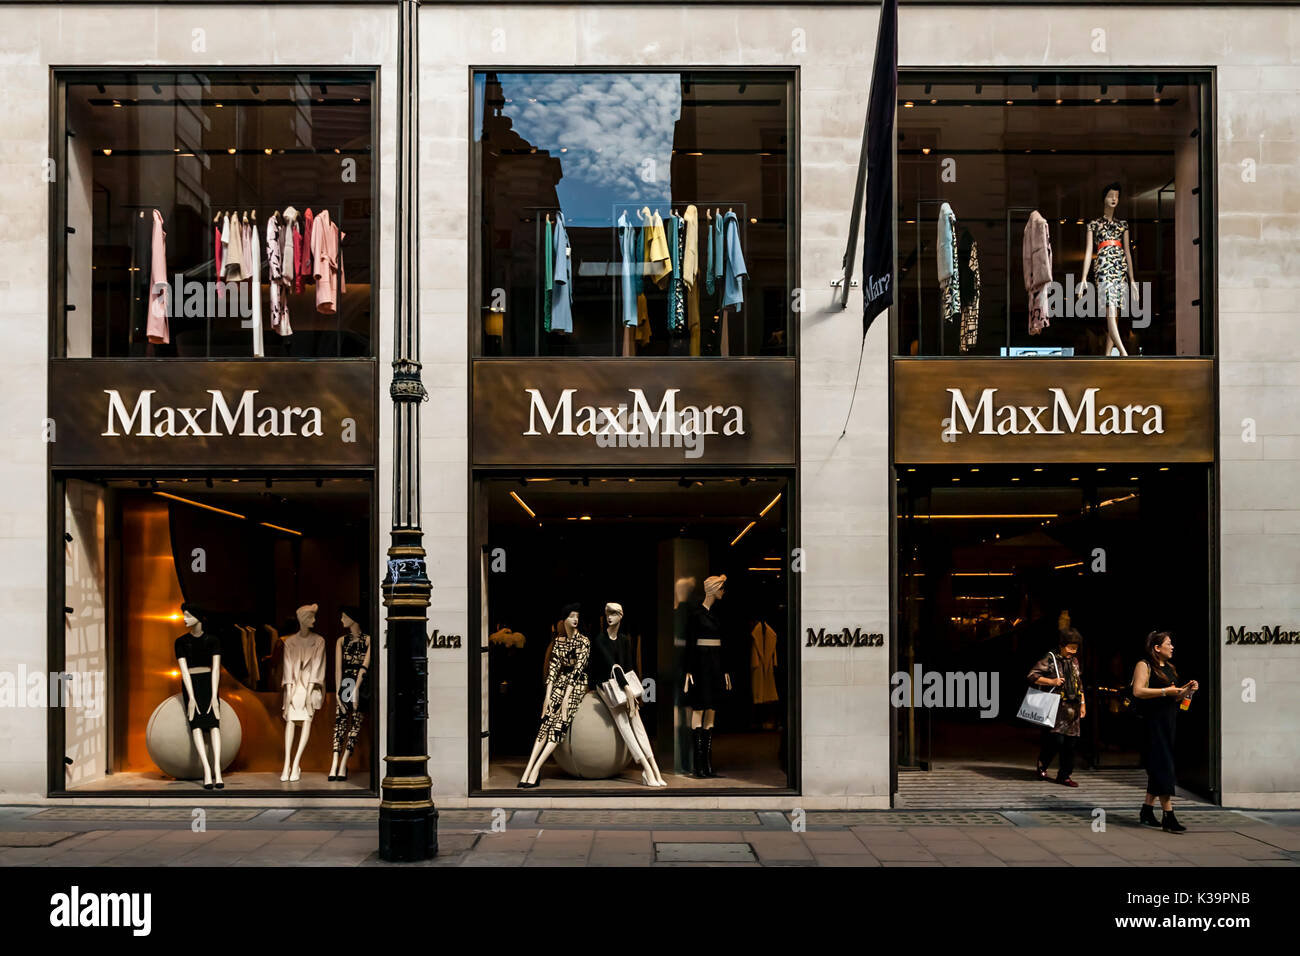 MaxMara Clothing Store, Old Bond Street, London, UK Stock Photo - Alamy